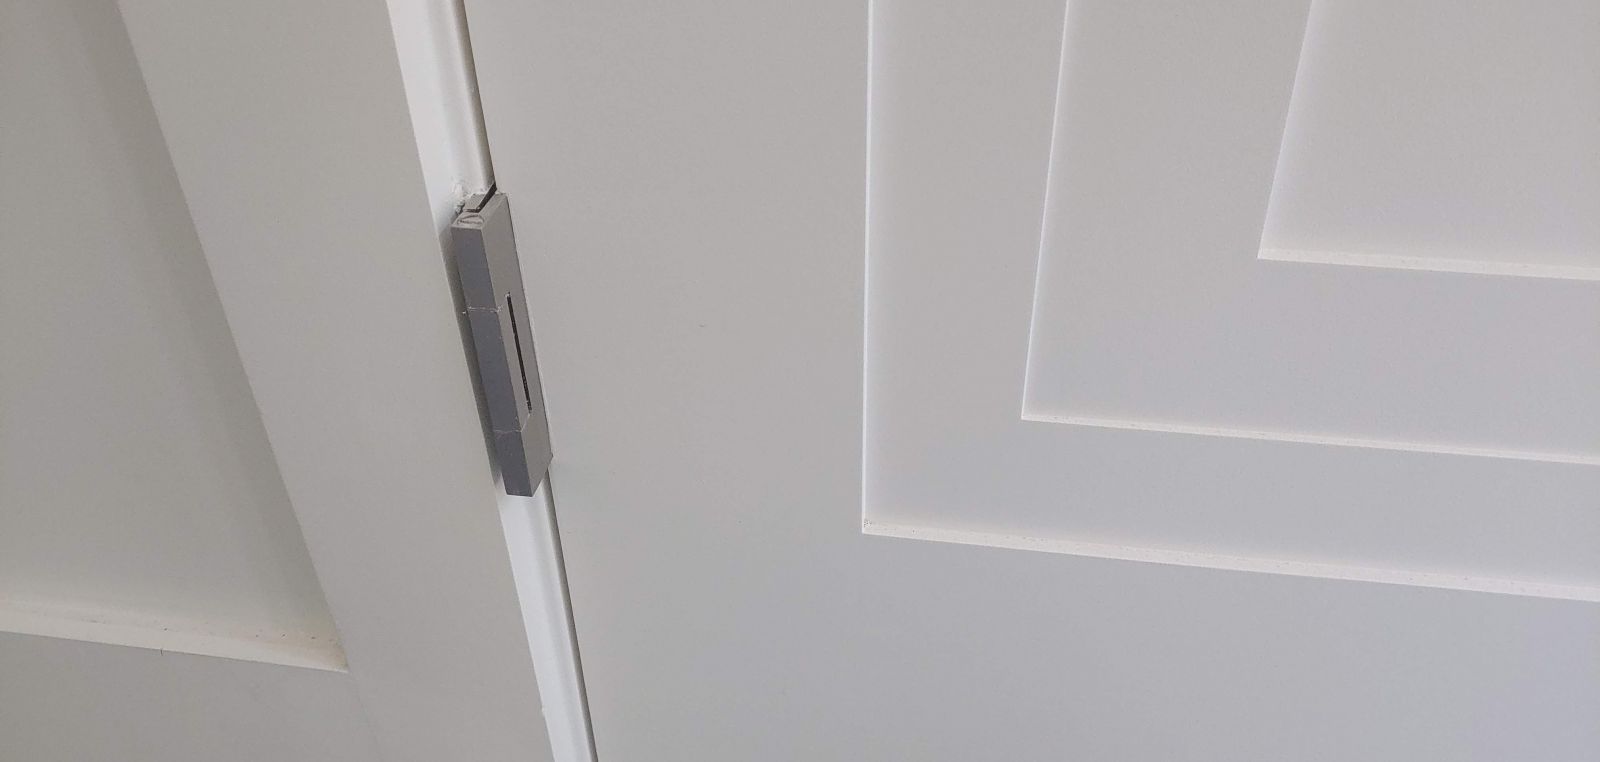 example of modern door hinges on interior door